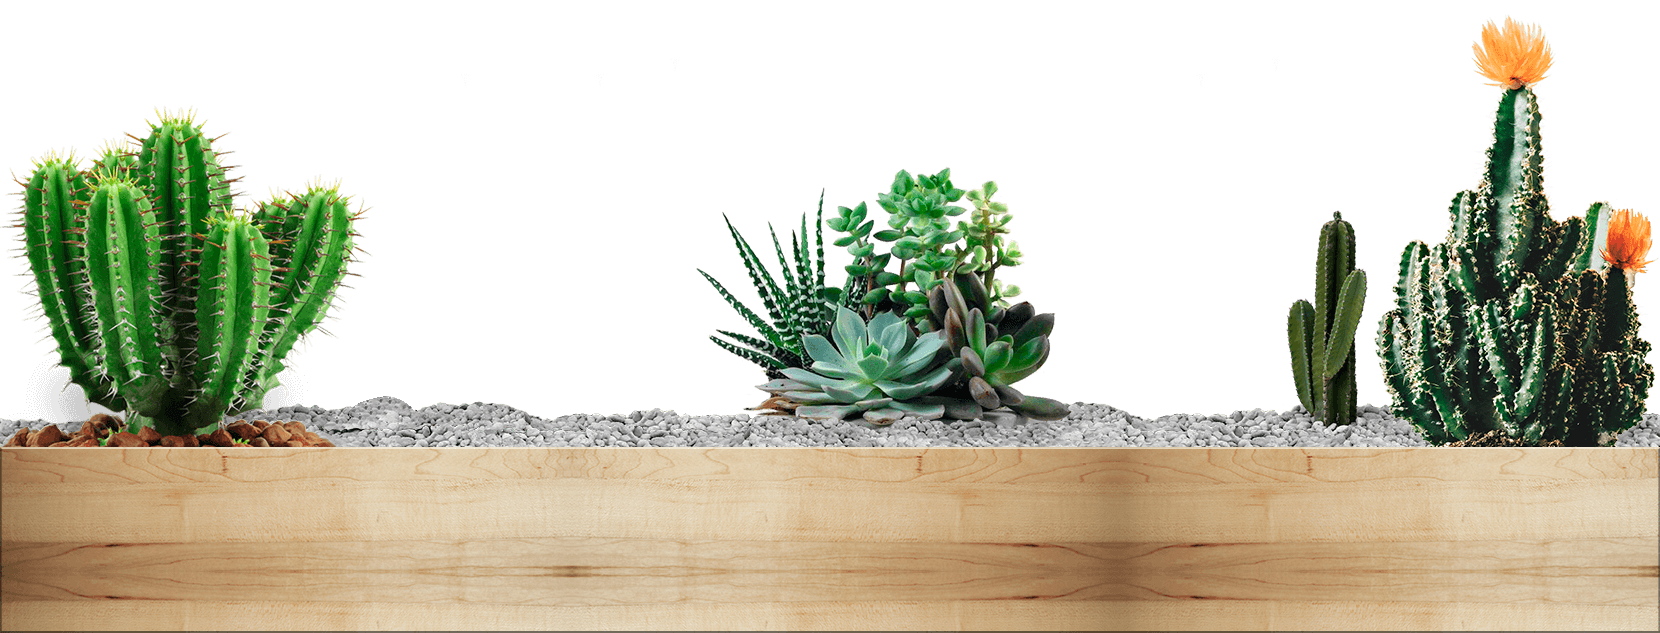 plantas cactus y suculentas sobre grava y madera